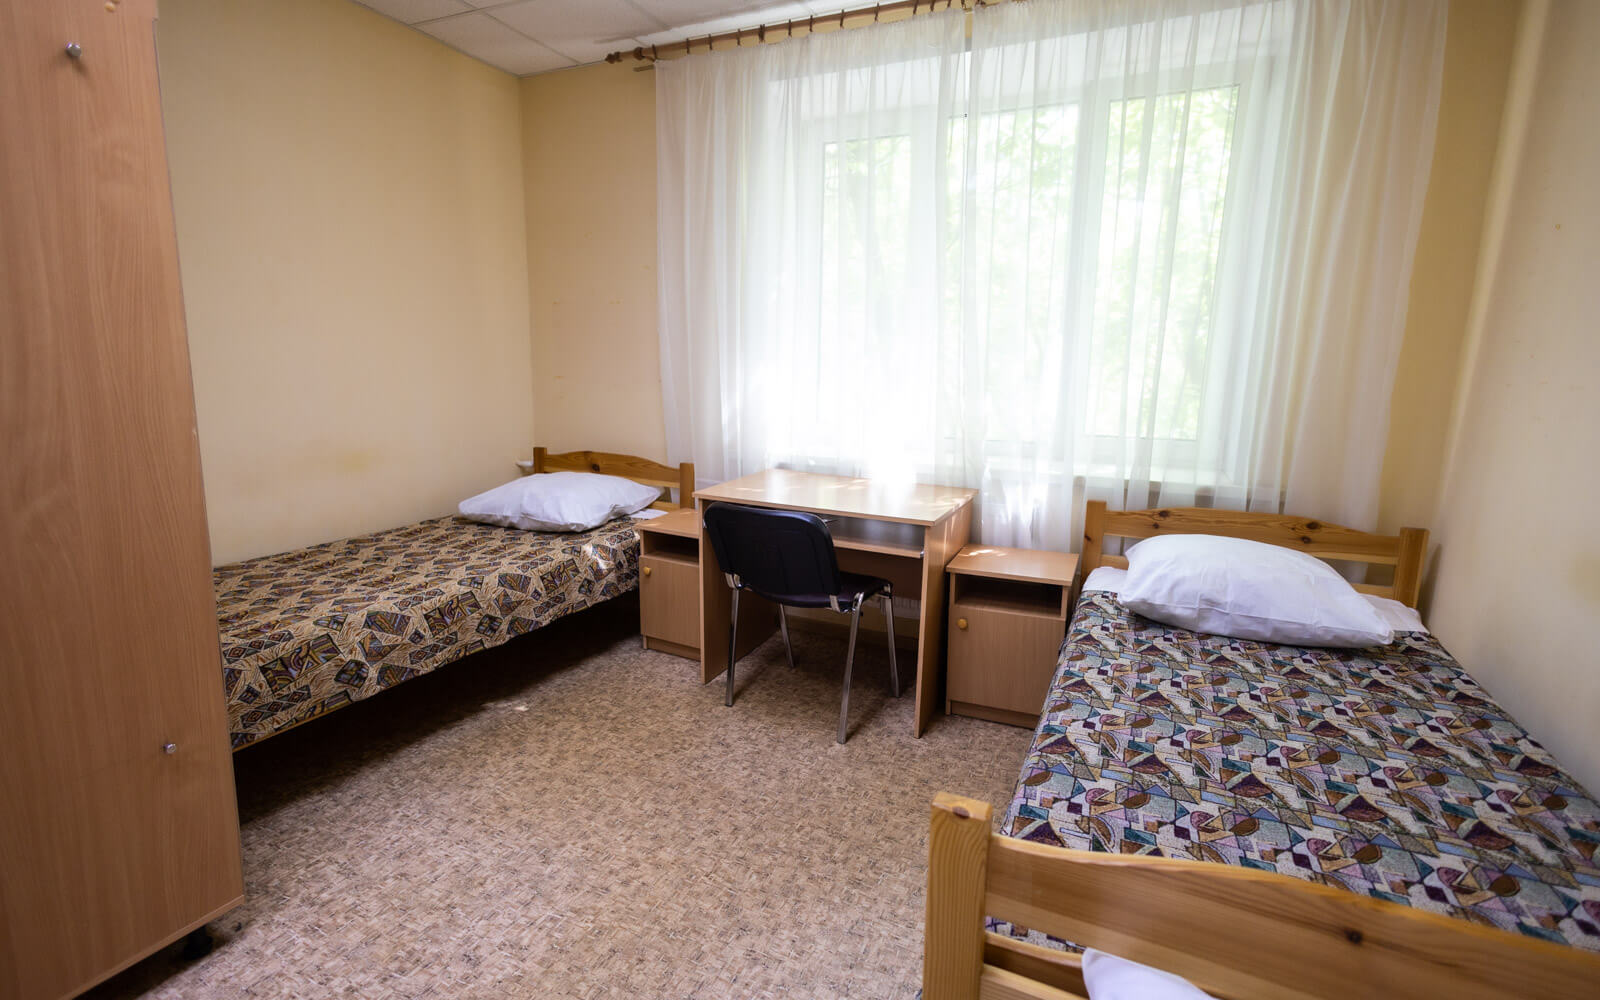 Общежития в Студгородке МАИ предоставляют доступ к современным технологиям, включая беспроводной интернет.